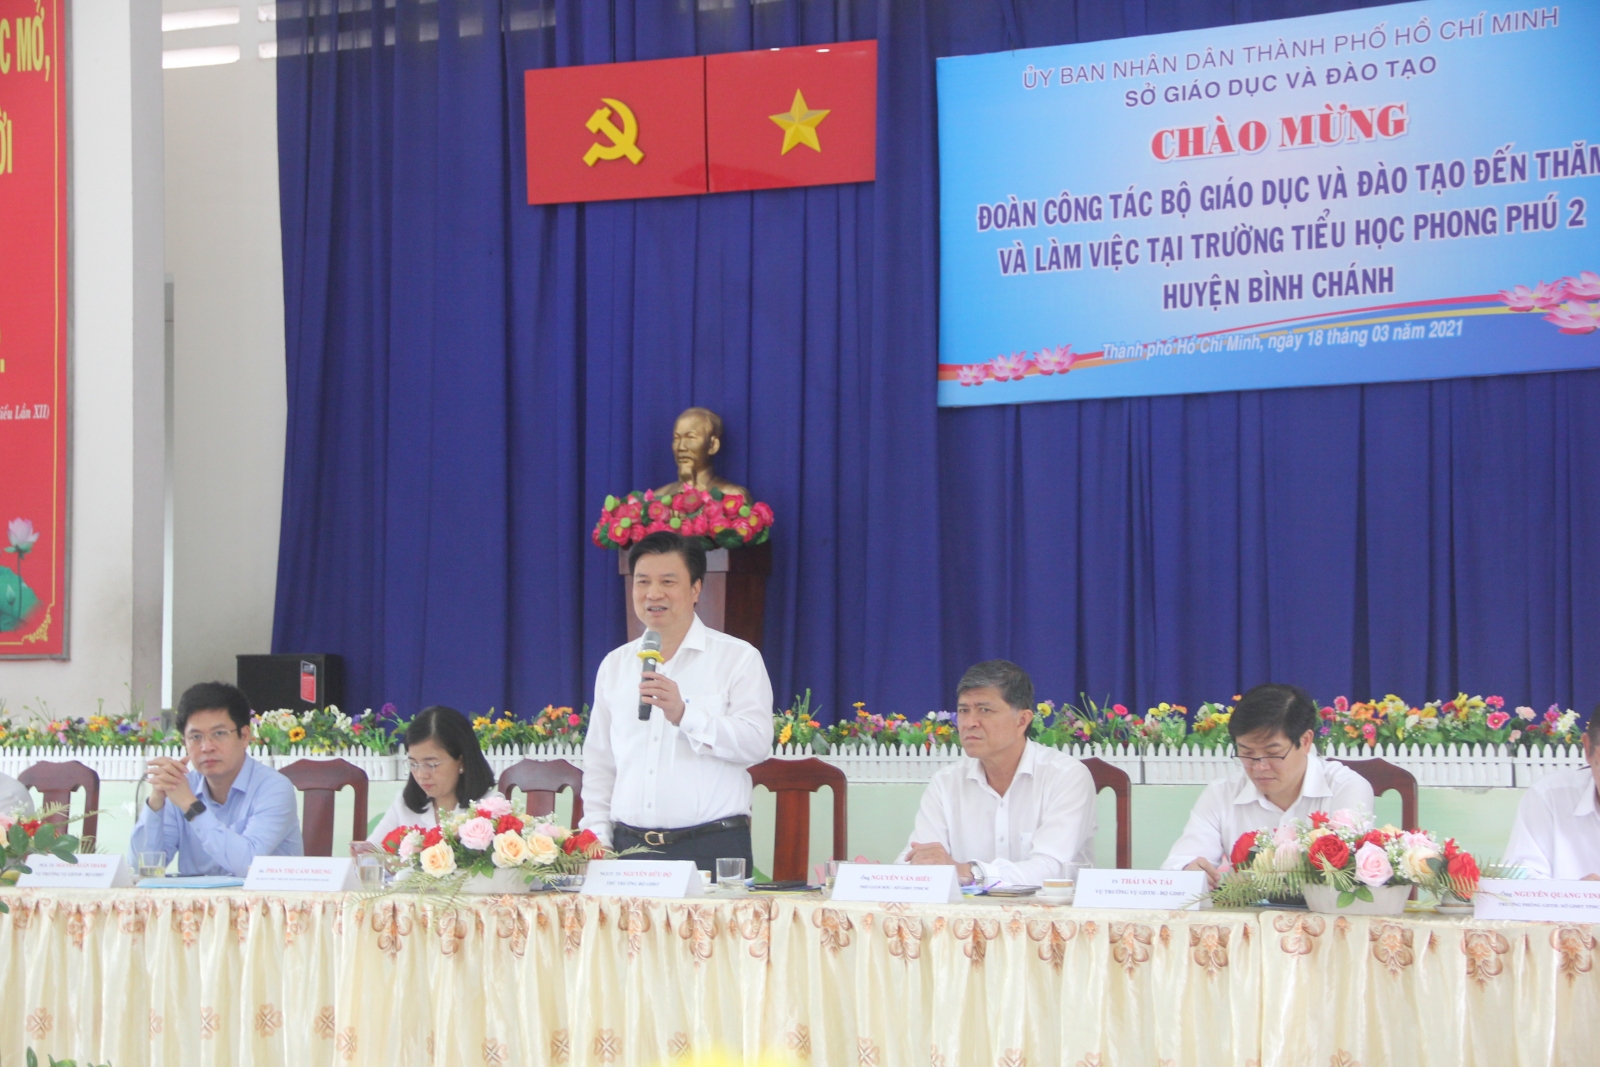 Thứ trưởng Nguyễn Hữu Độ khảo sát thực hiện chương trình GDPT 2018 tại TPHCM - Ảnh minh hoạ 3